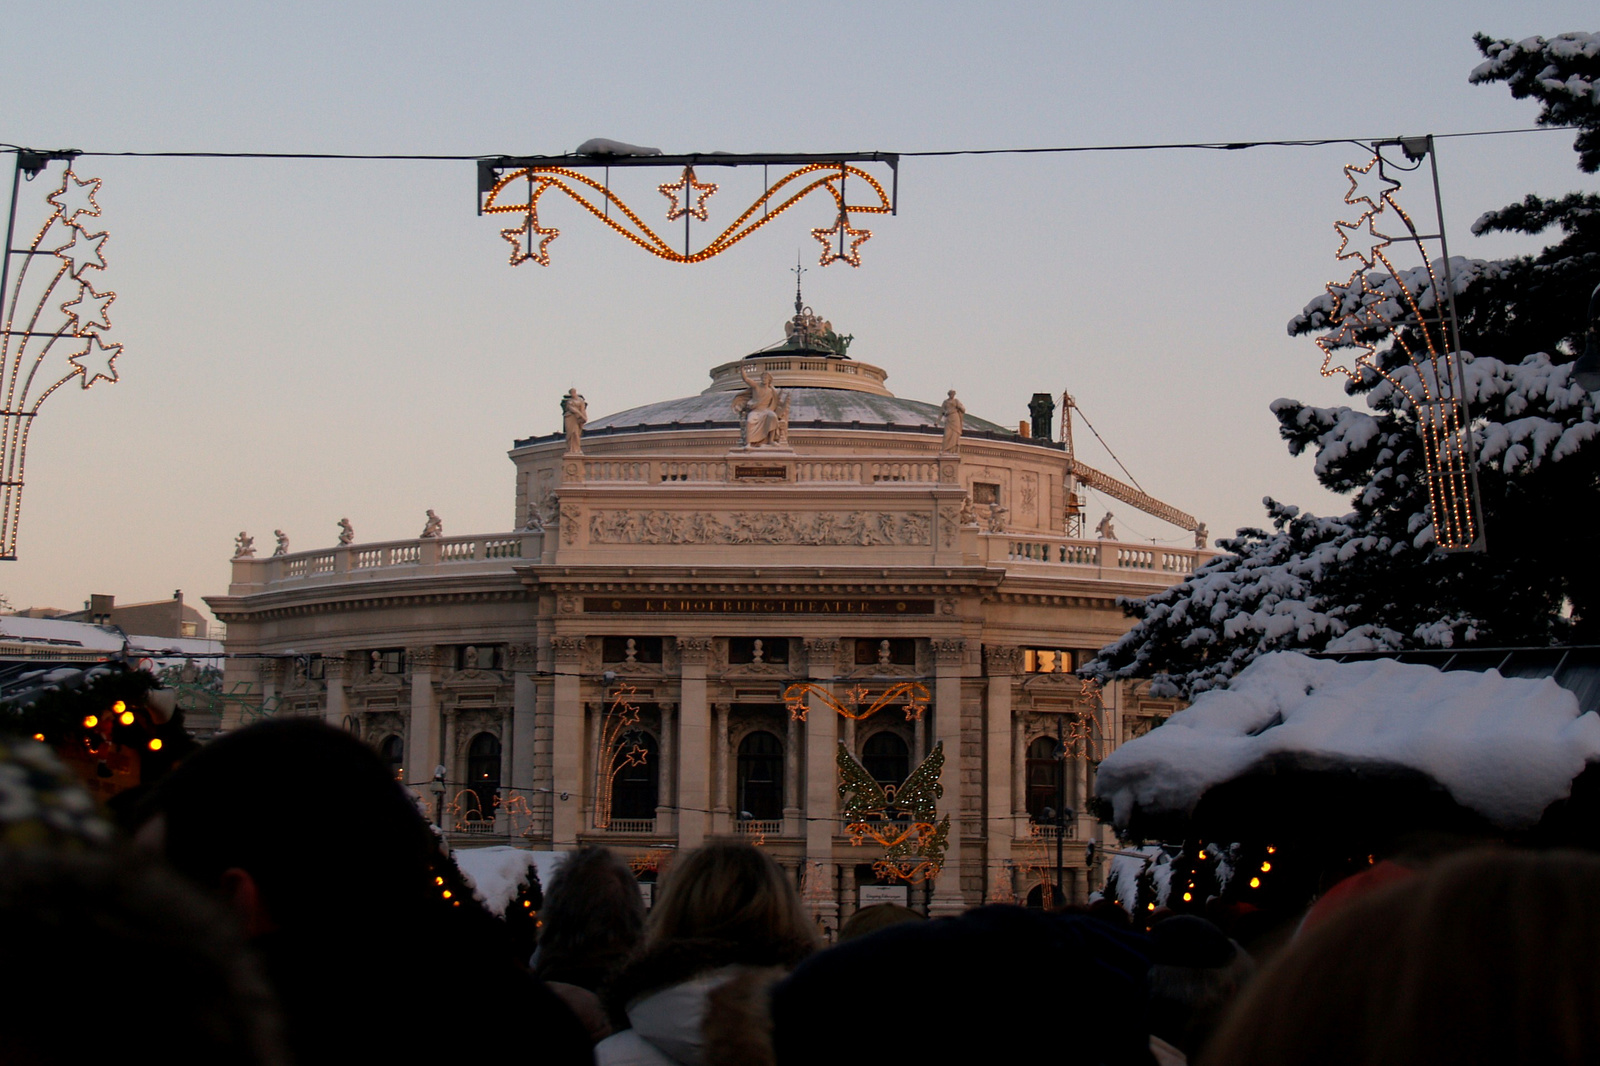 2010.12.04. Bécs (18)